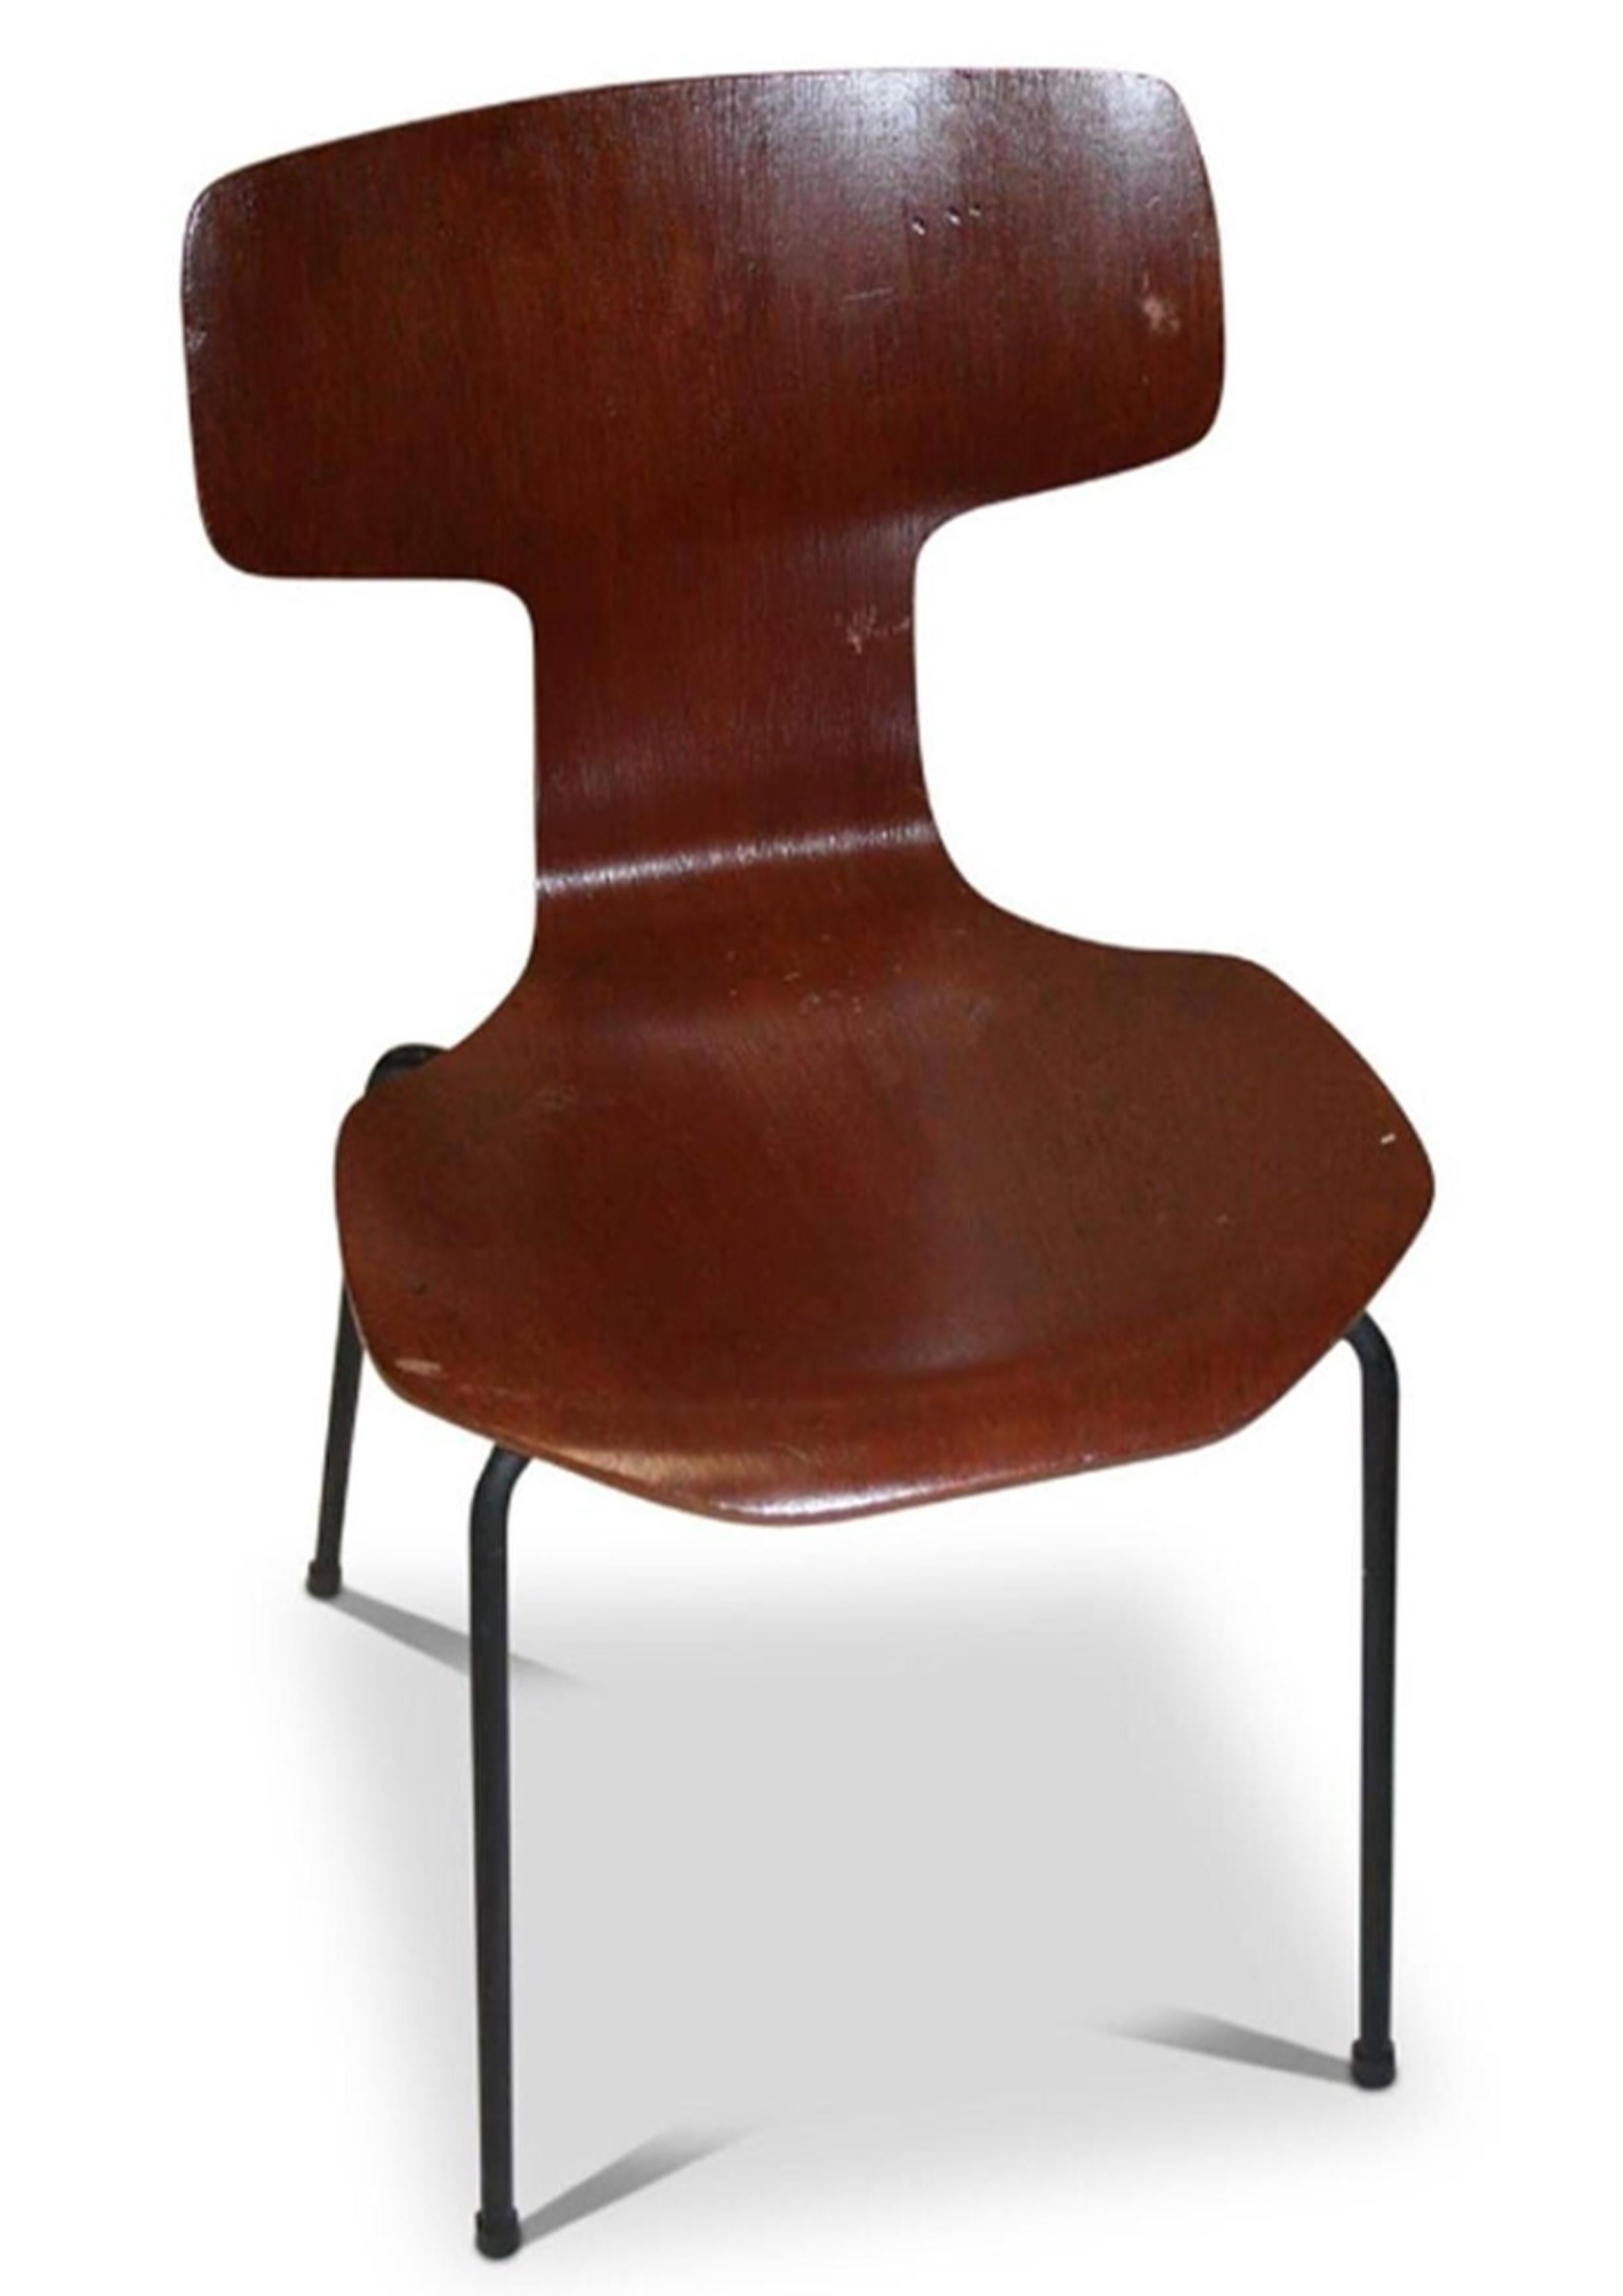 Stained Original Labelled Arne Jacobsen for Fritz Hansen Model 3103 